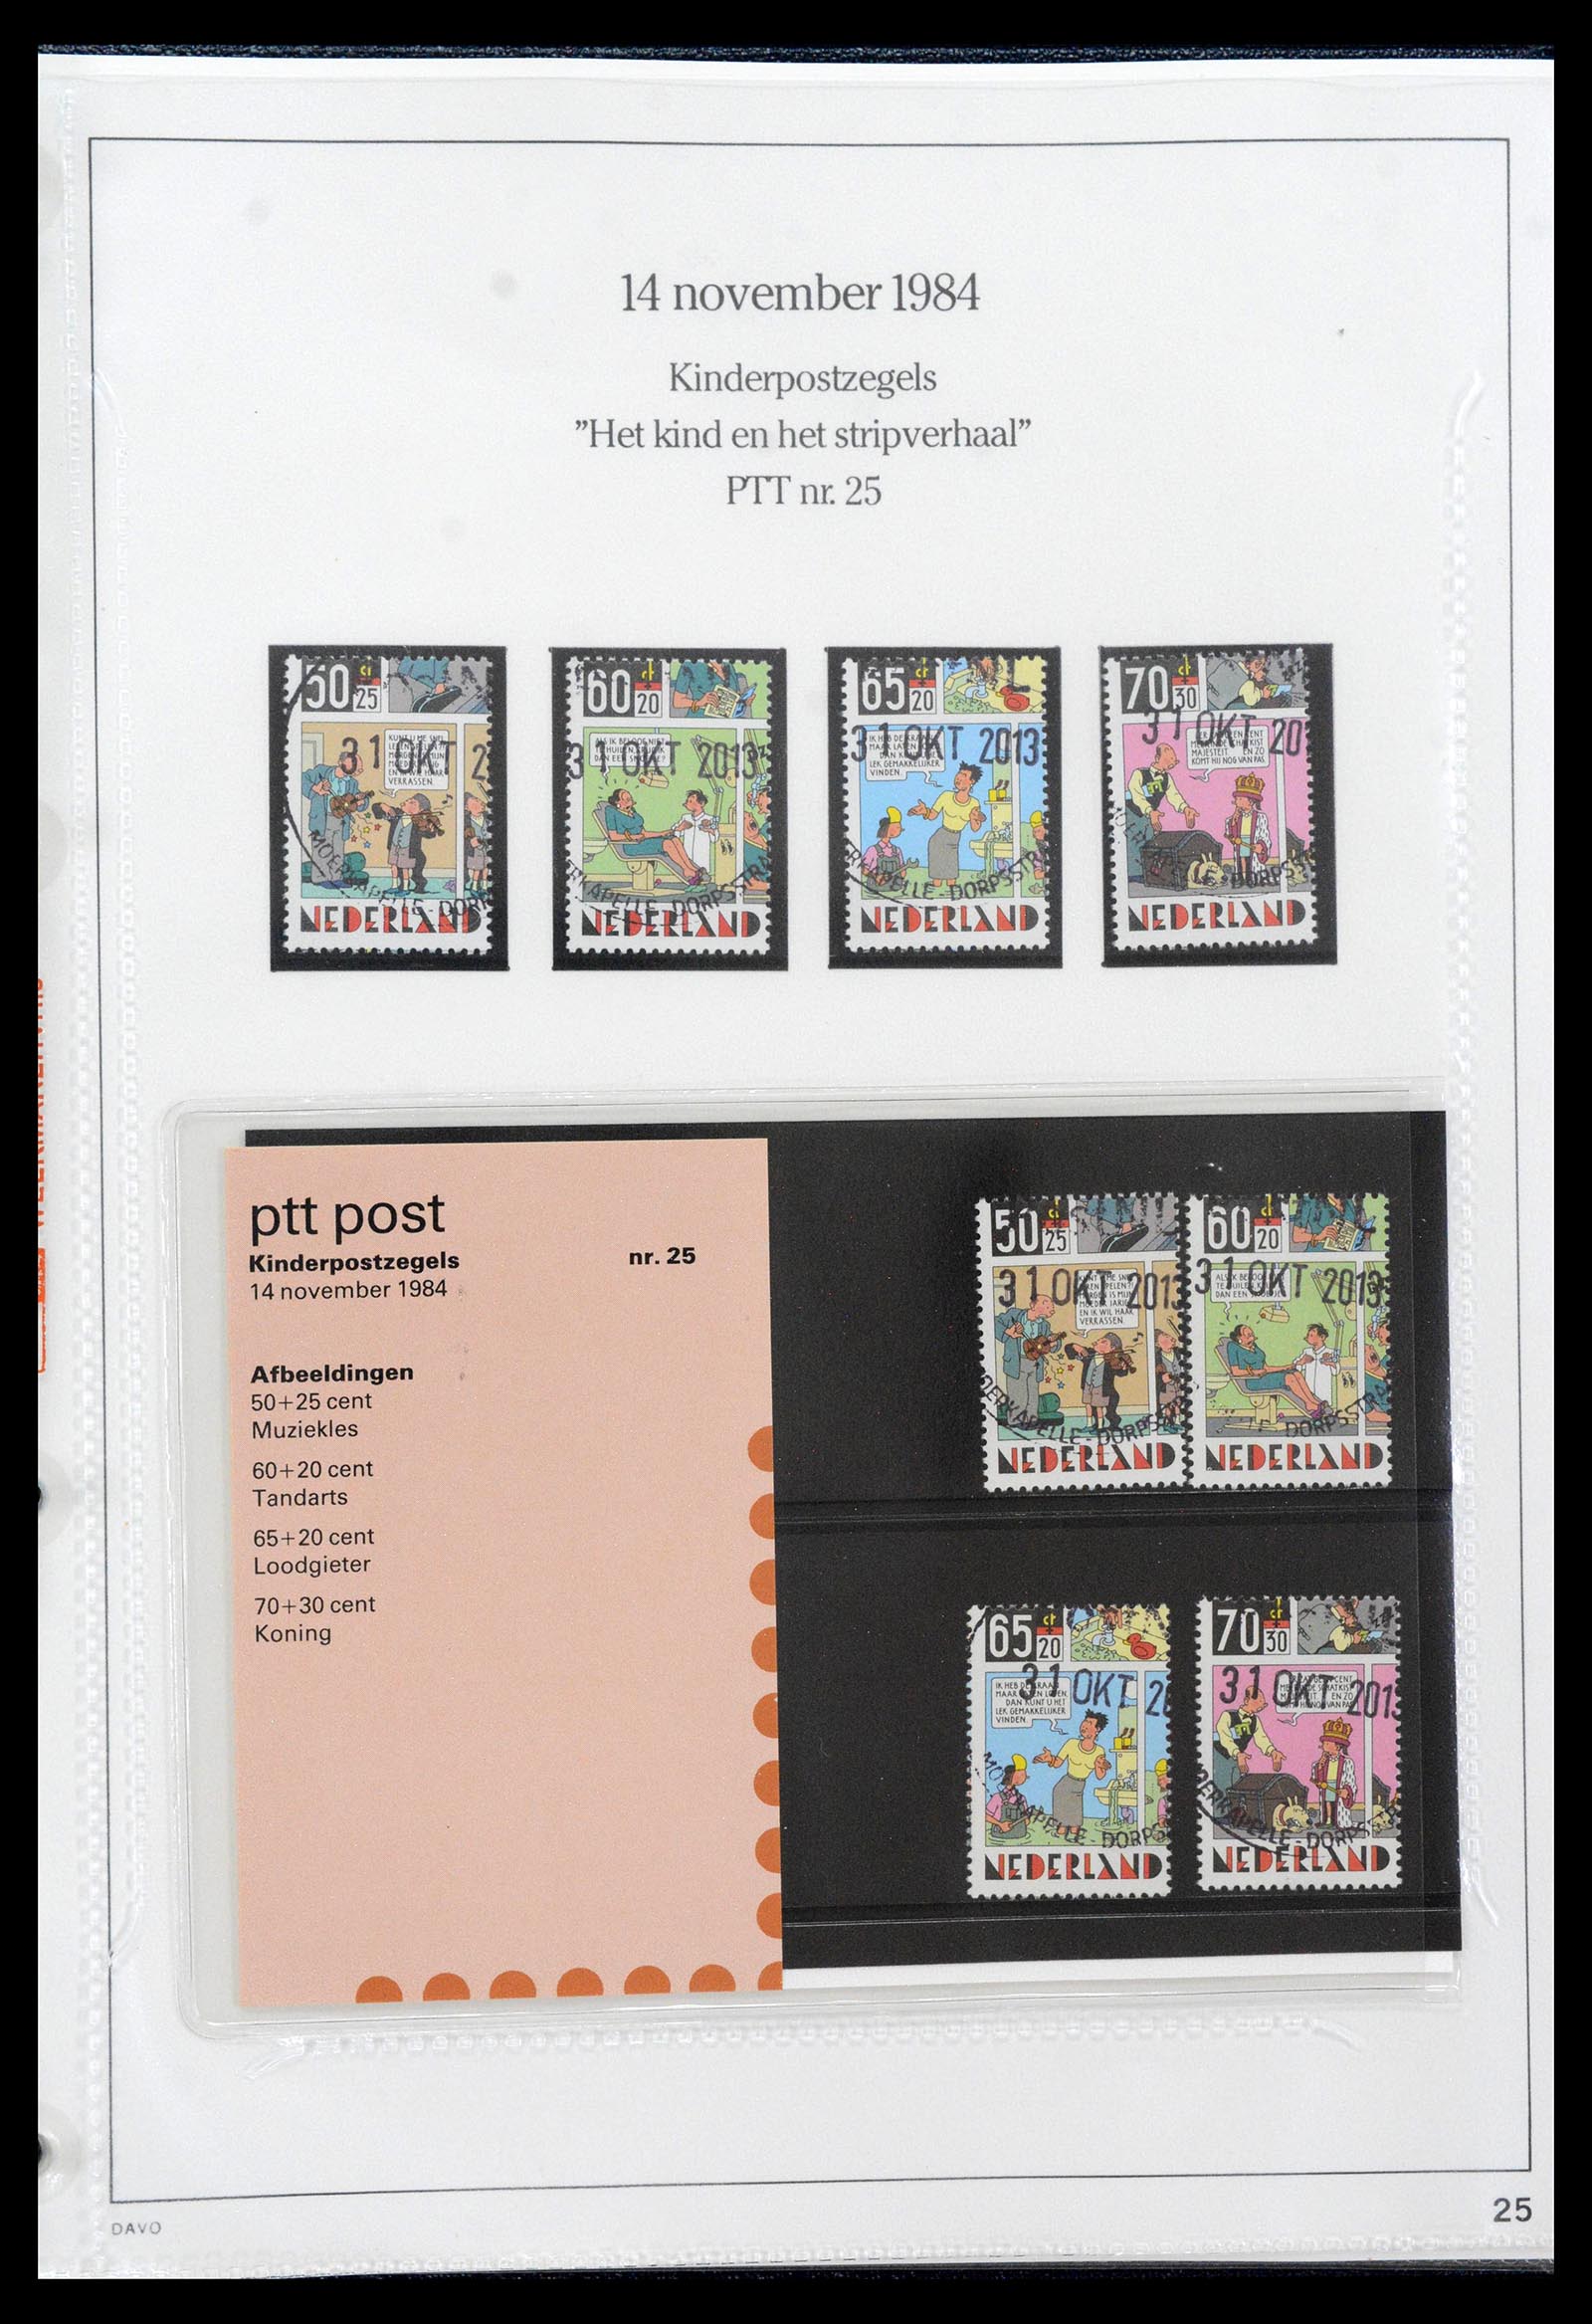 39121 0025 - Stamp collection 39121 Netherlands presentationpacks 1982-2001.